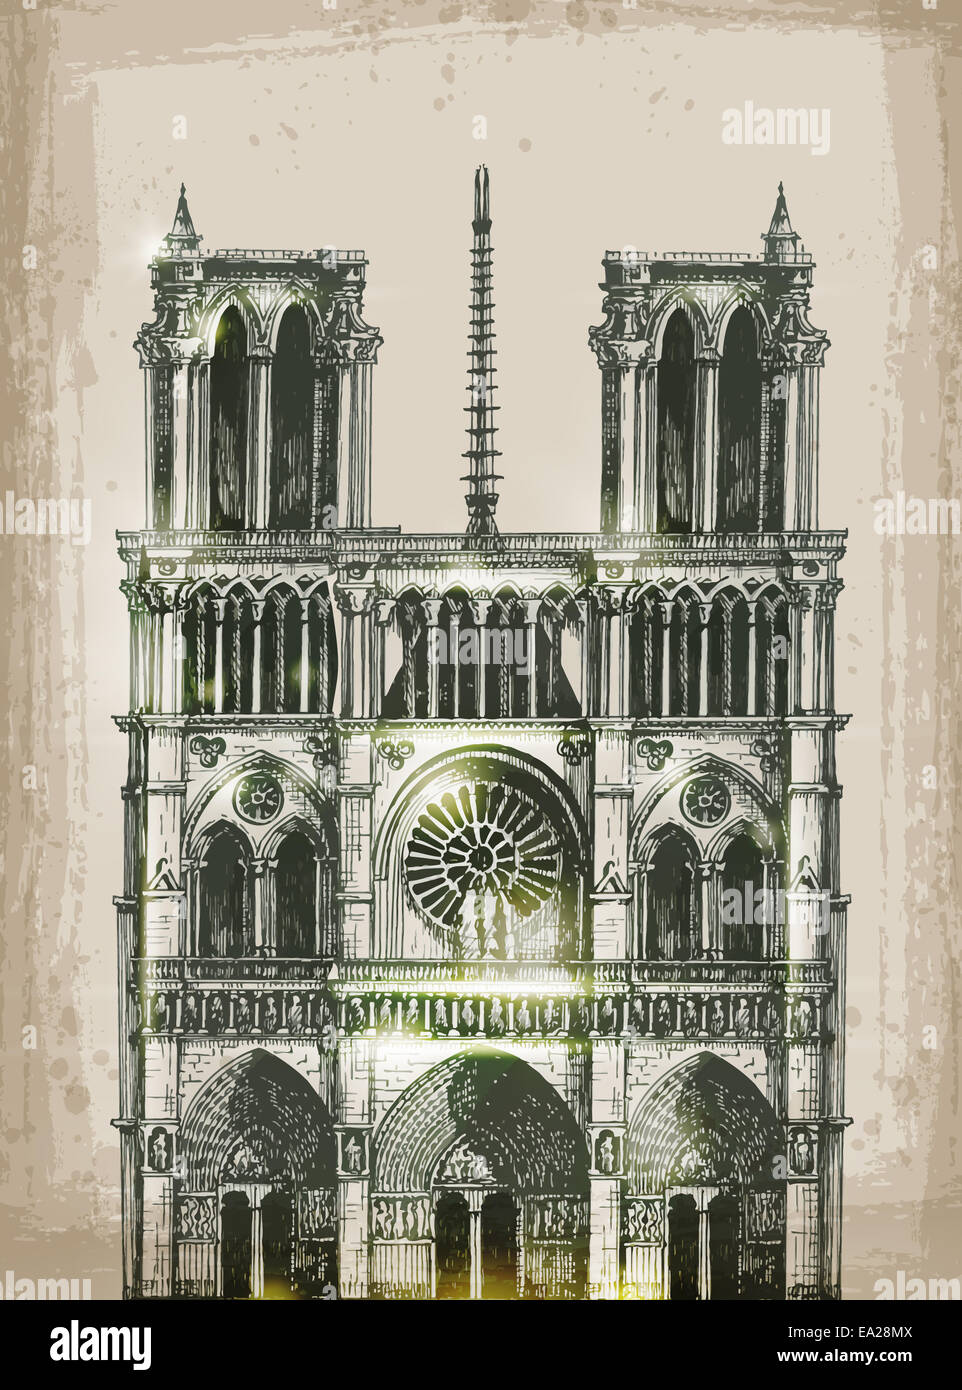 Cathédrale Notre Dame de Paris, France. Illustration à la main Banque D'Images